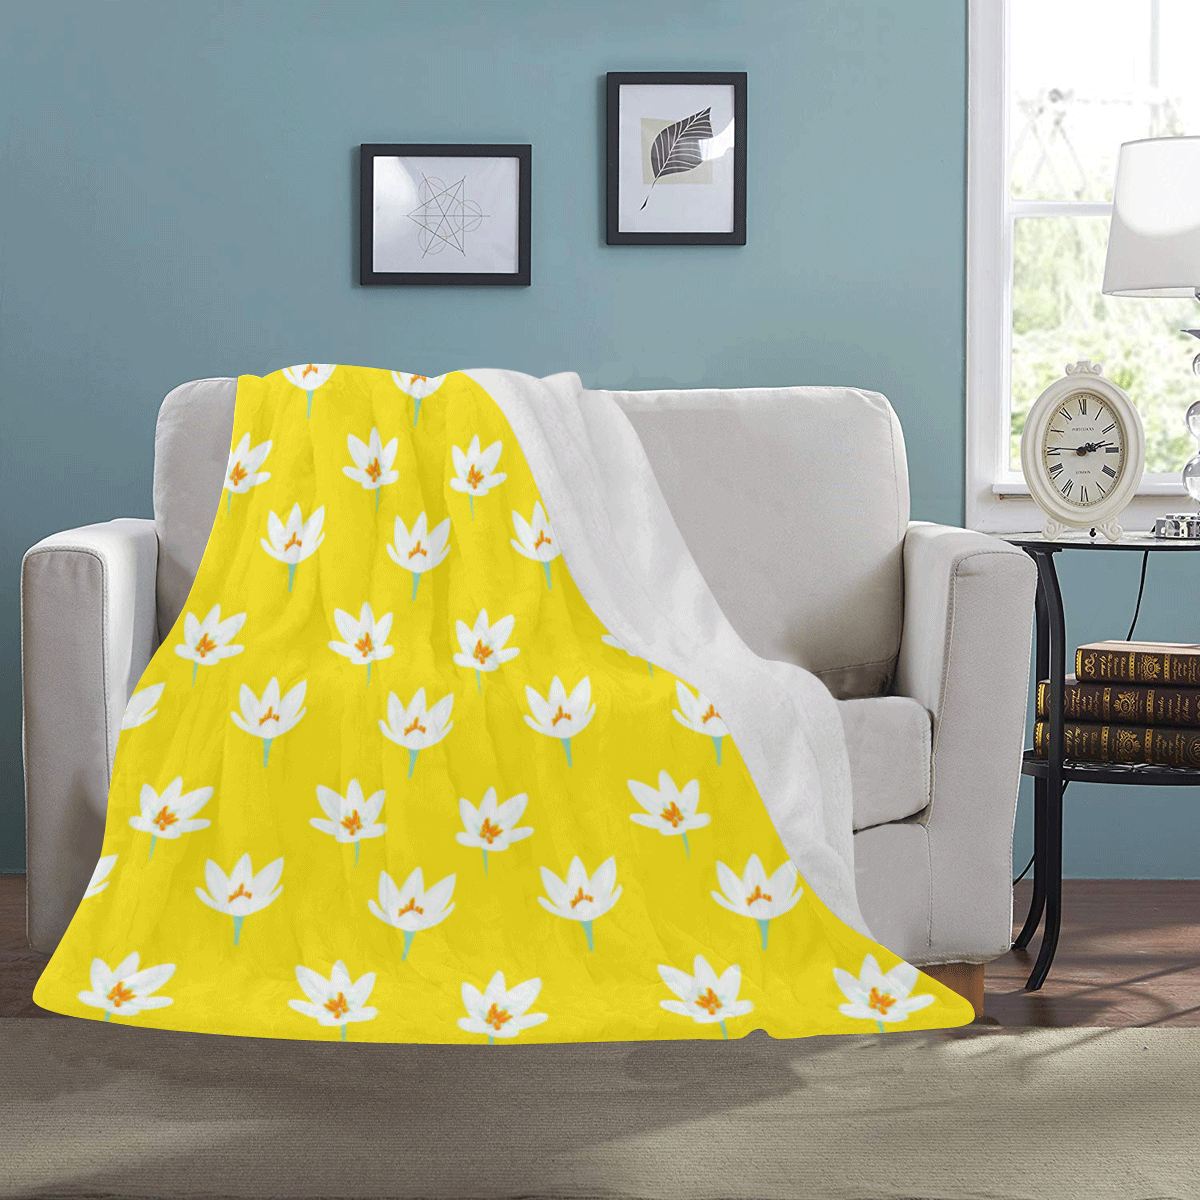 RL Yellow Ultra-Soft Micro Fleece Blanket 50"x60"